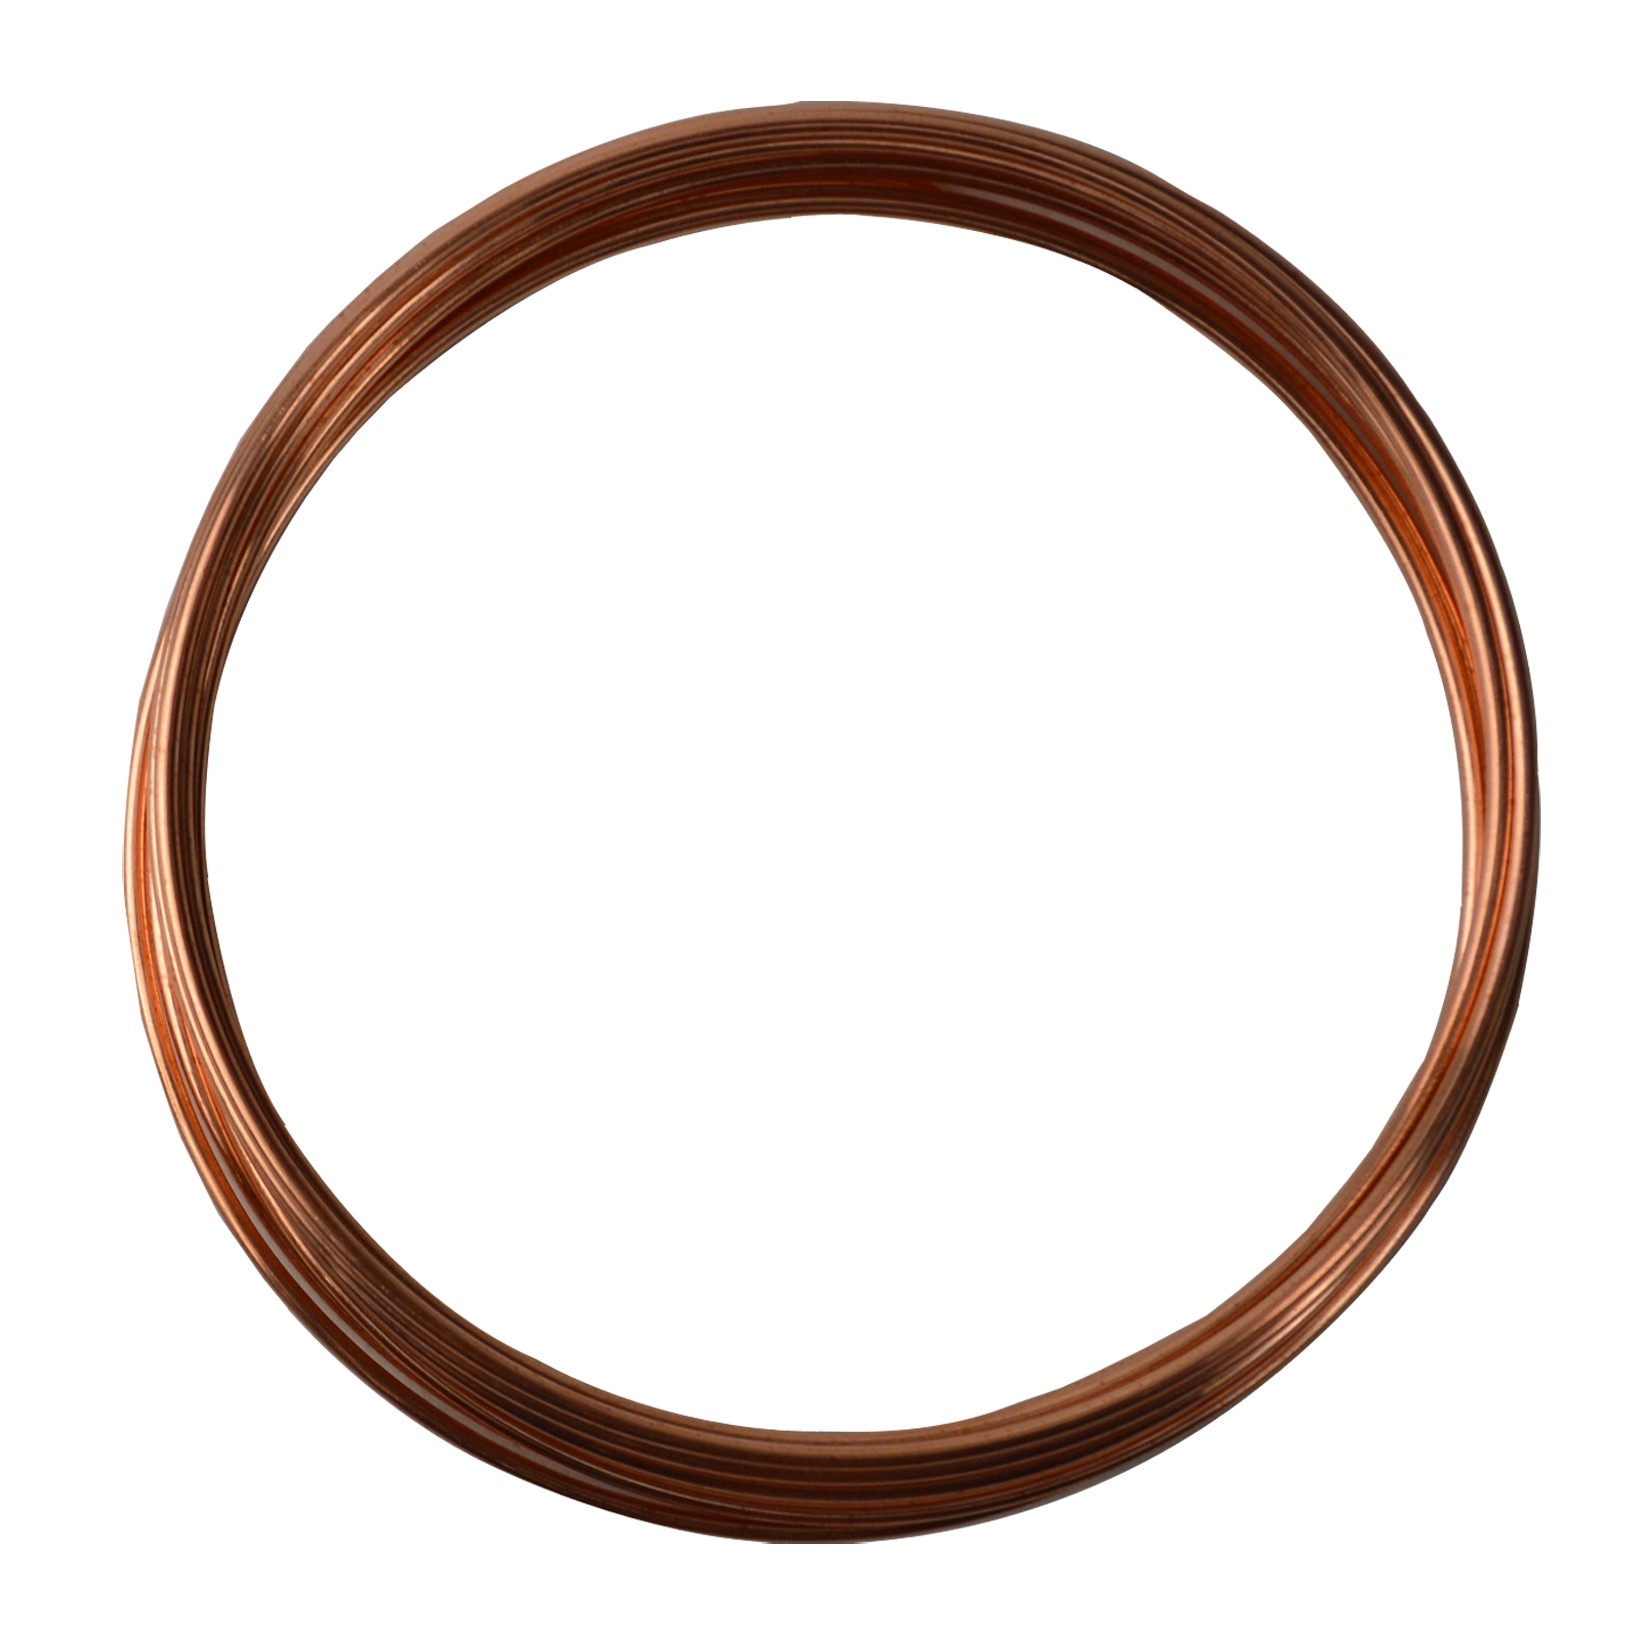 Half Round Copper Wire - Half Round Copper by